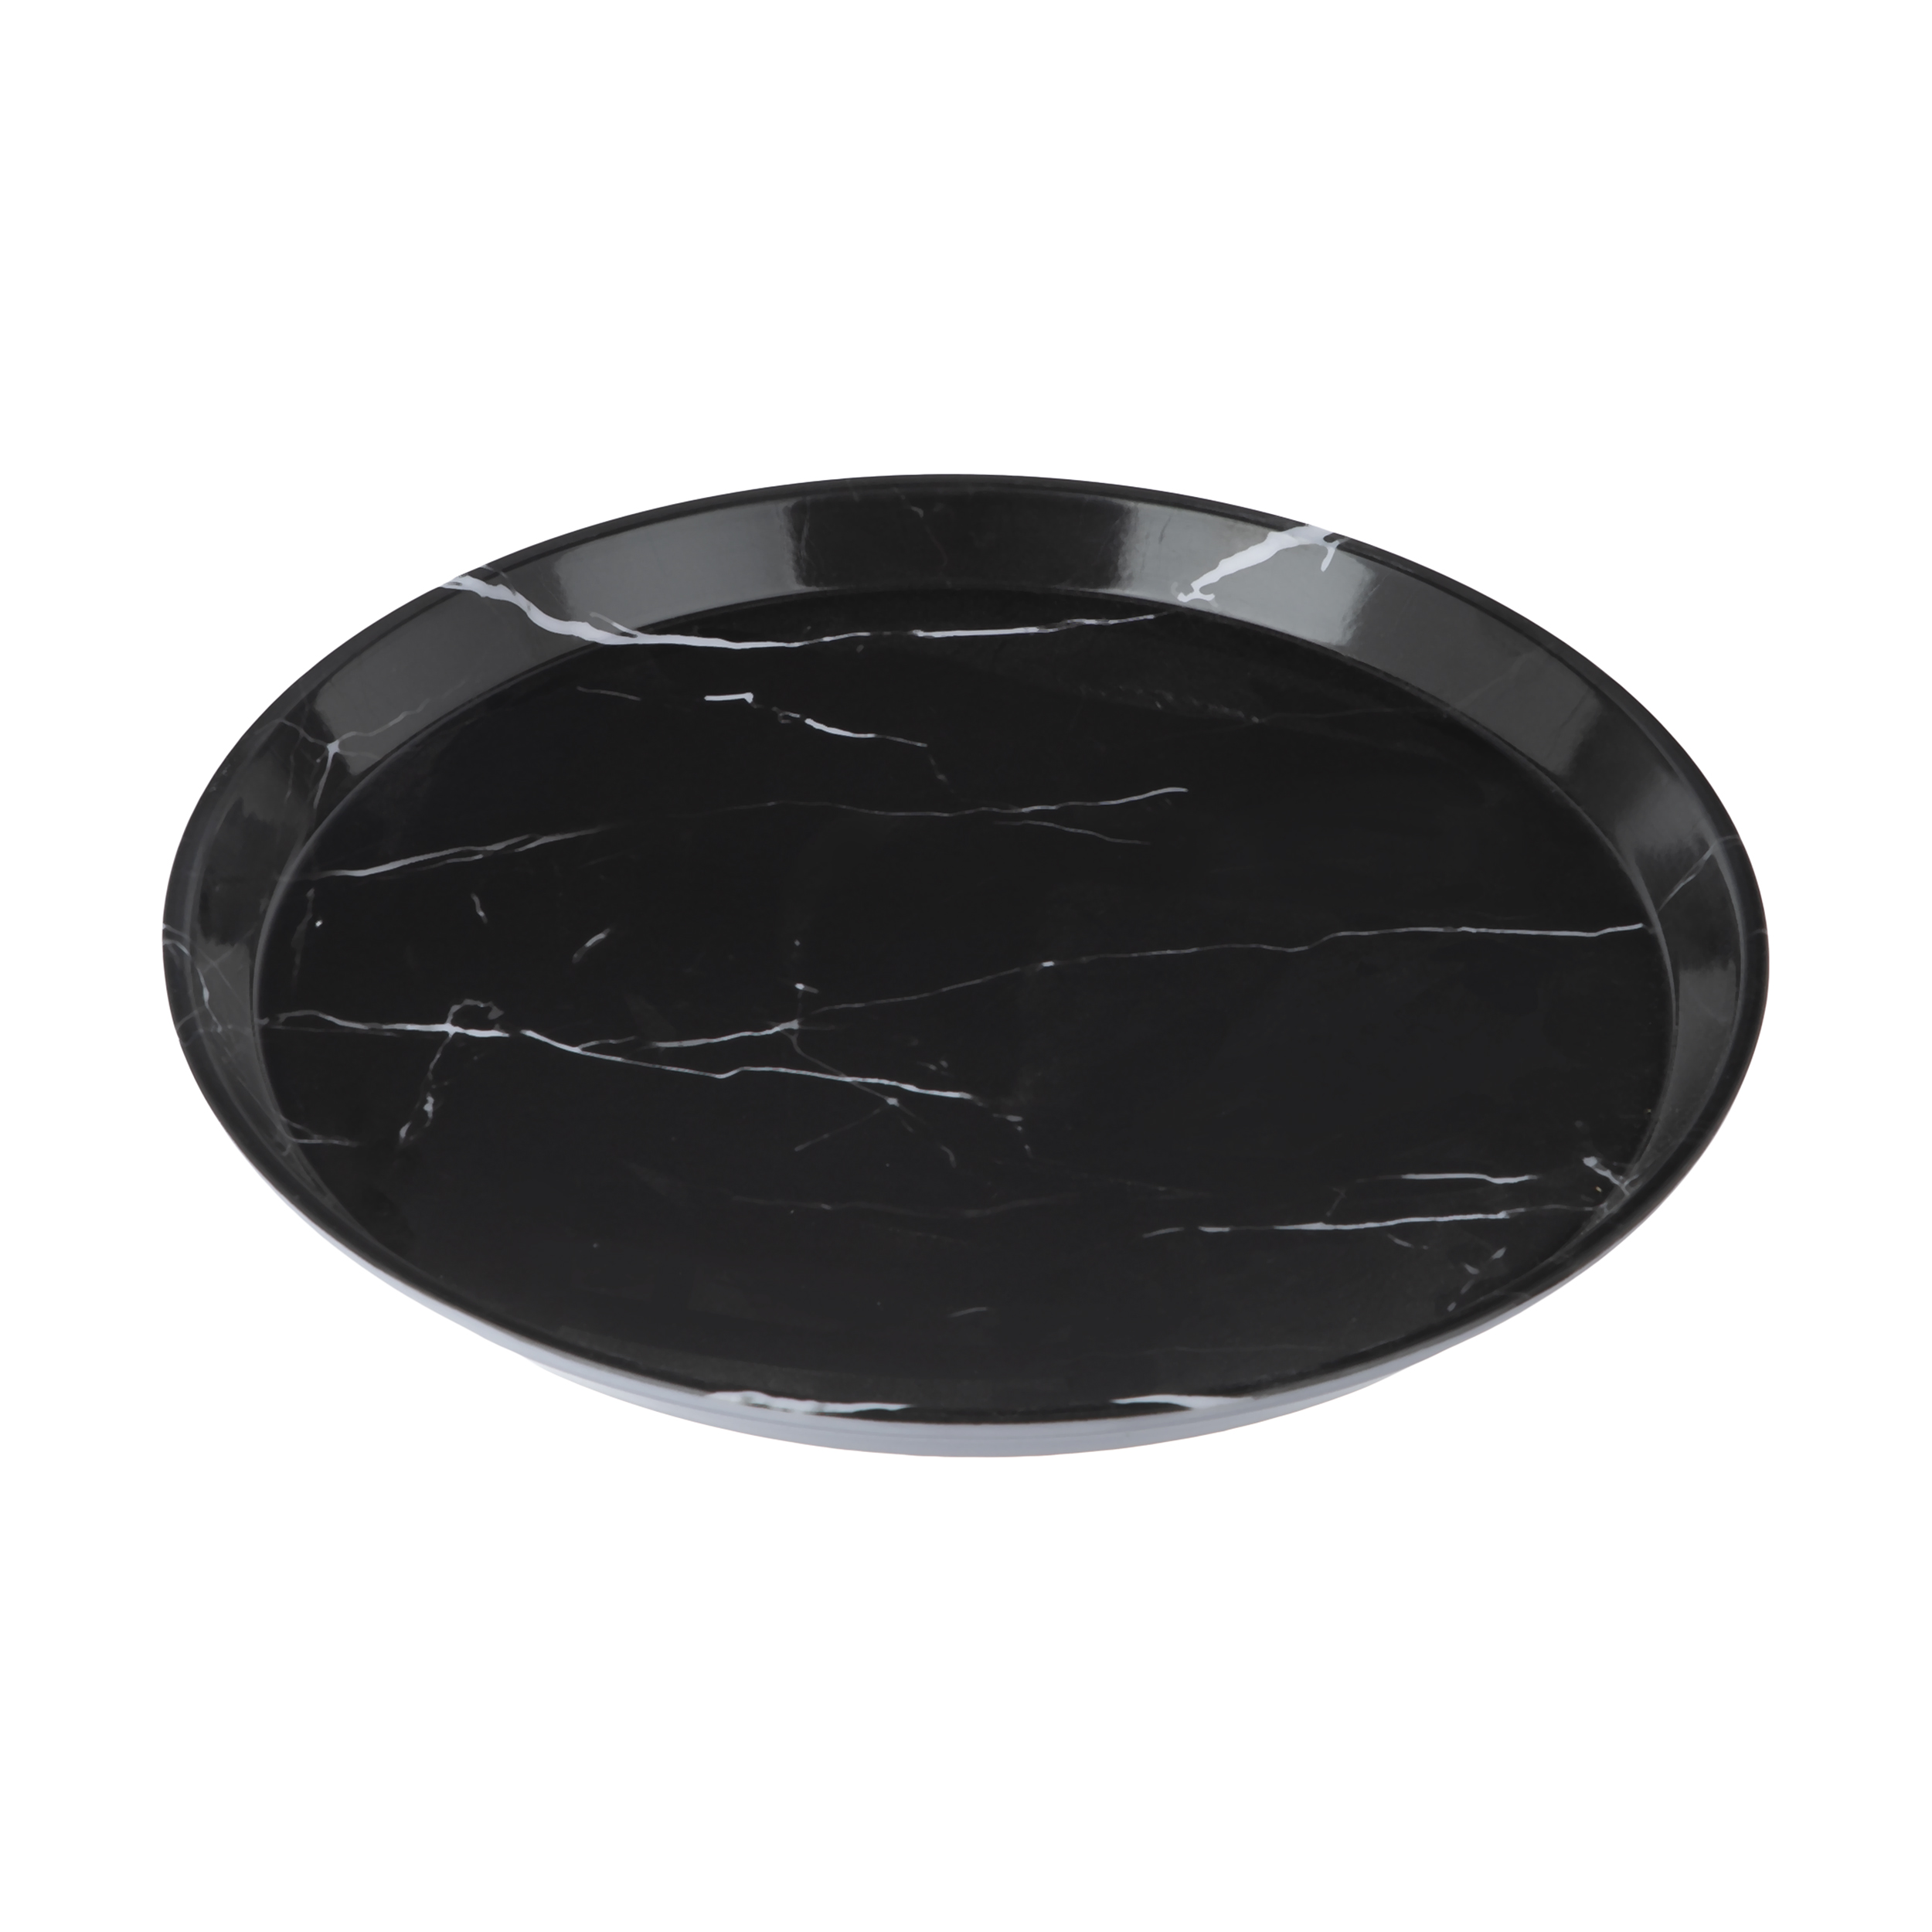 سینی کسری یزد مدل 6003 marble black